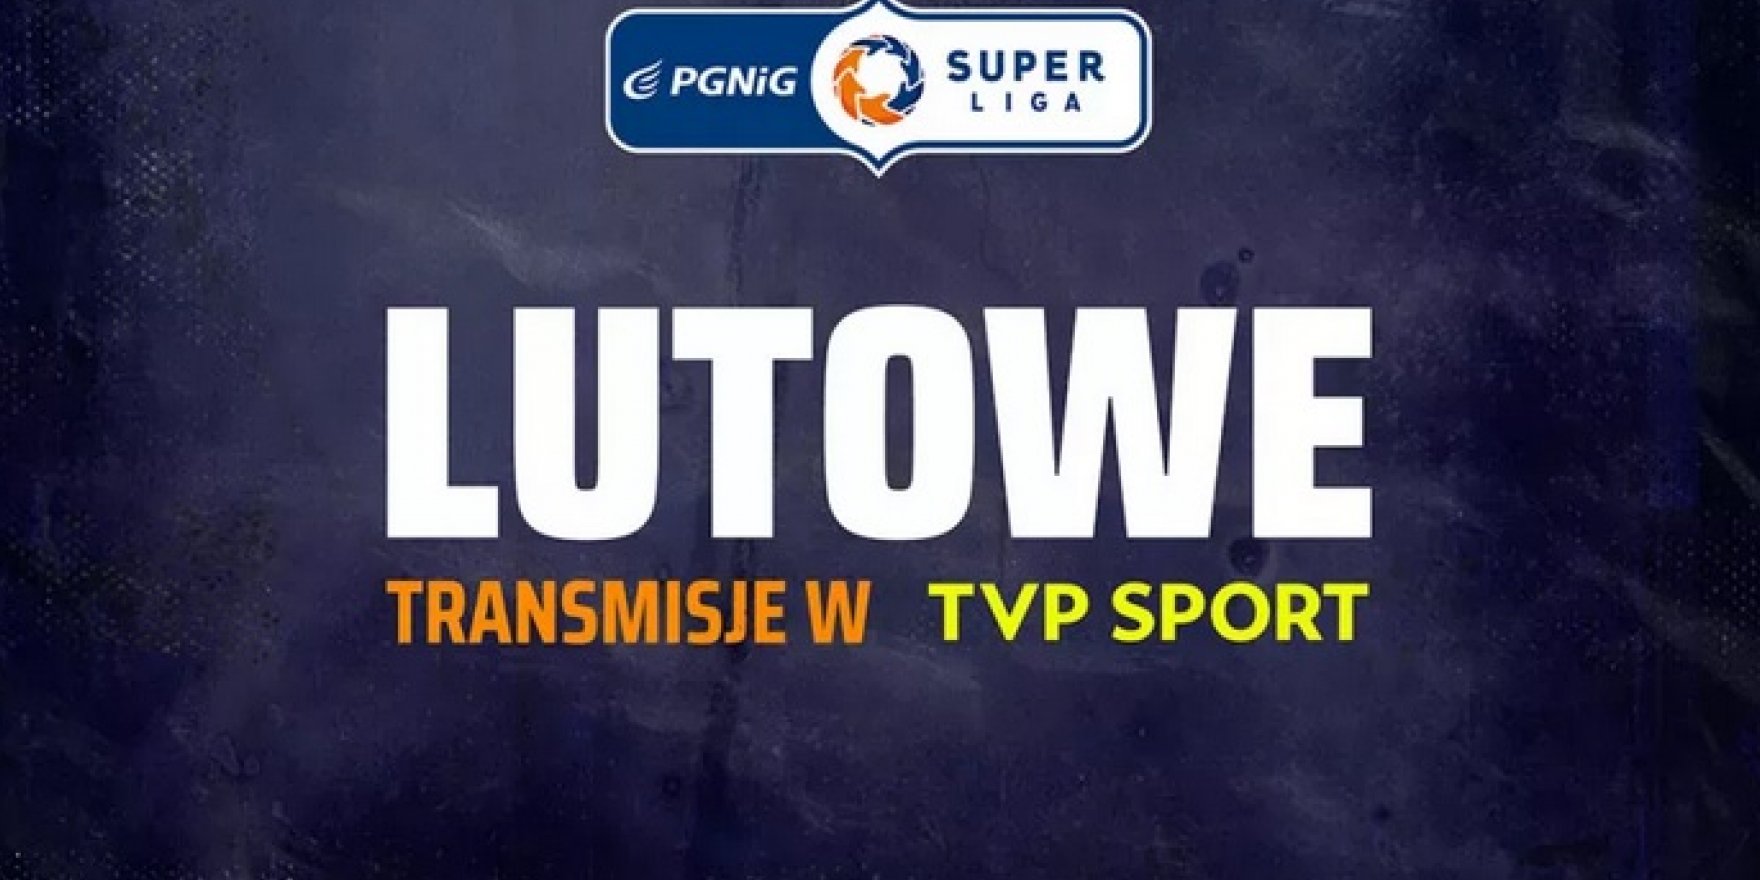 PGNiG Superliga wraca do gry! Plan transmisji w lutym w TVP Sport